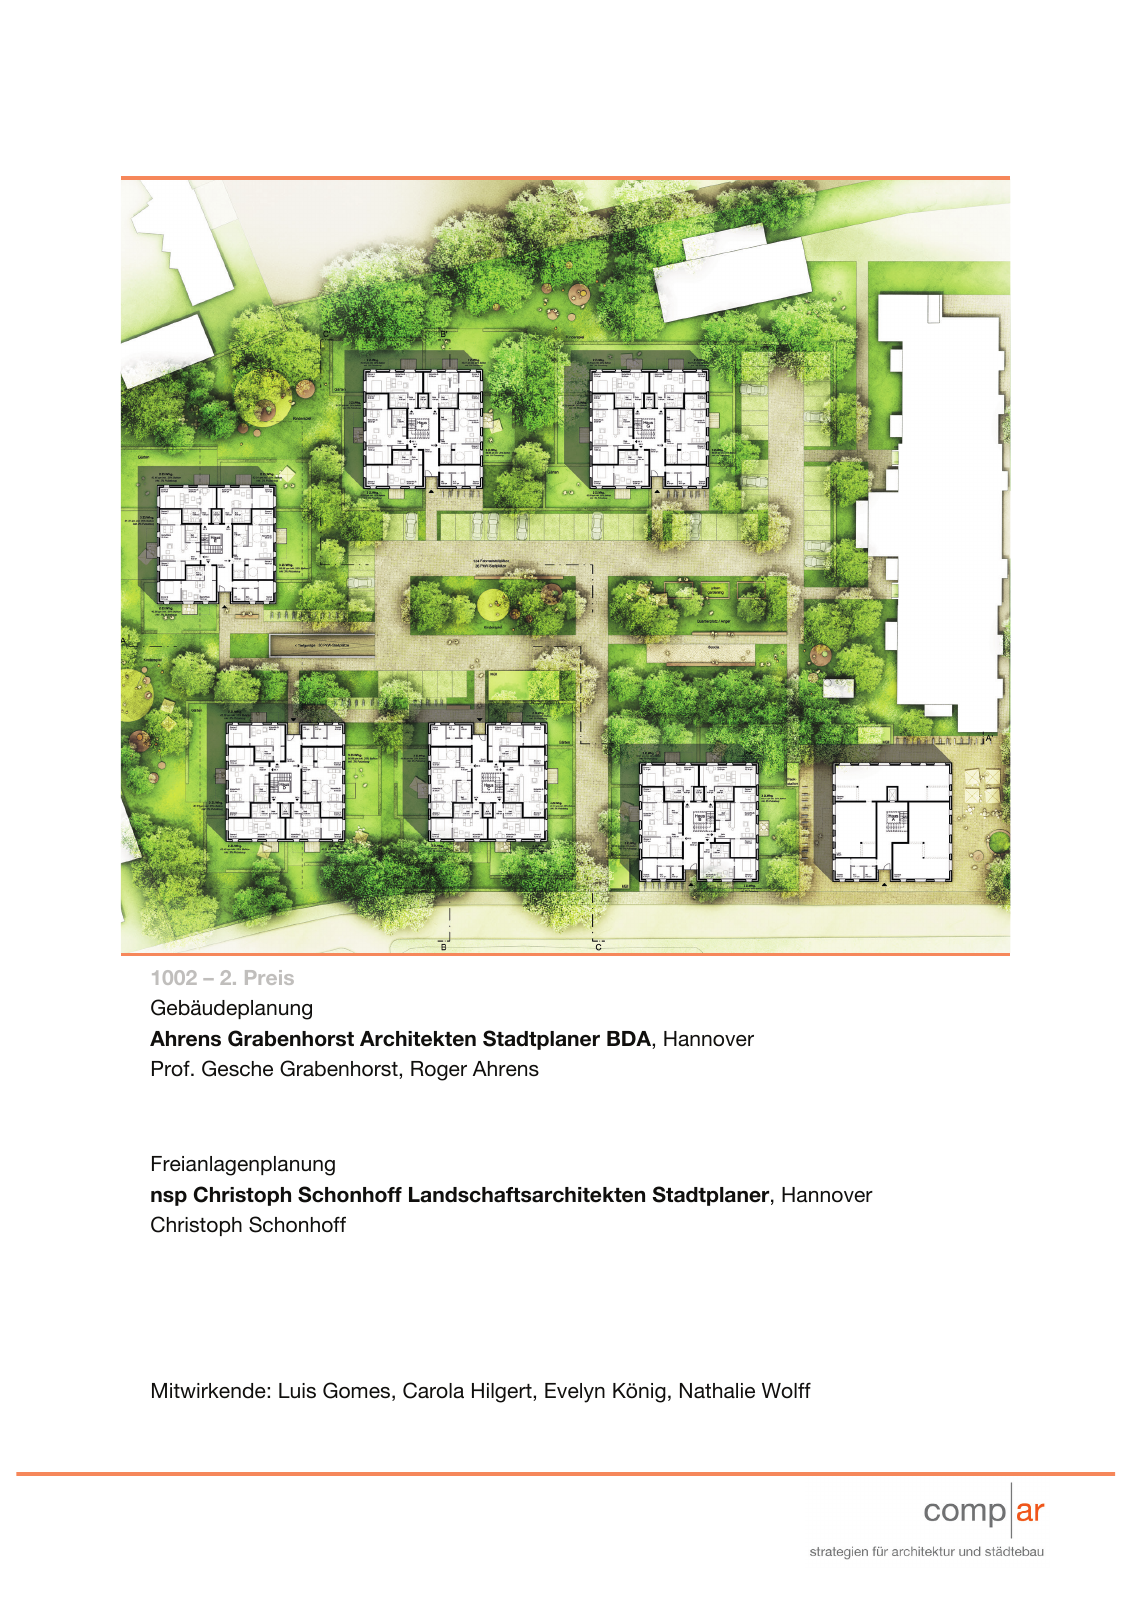 Vorschau Neubau von 100 Wohneinheiten [Nordhorn] Seite 9